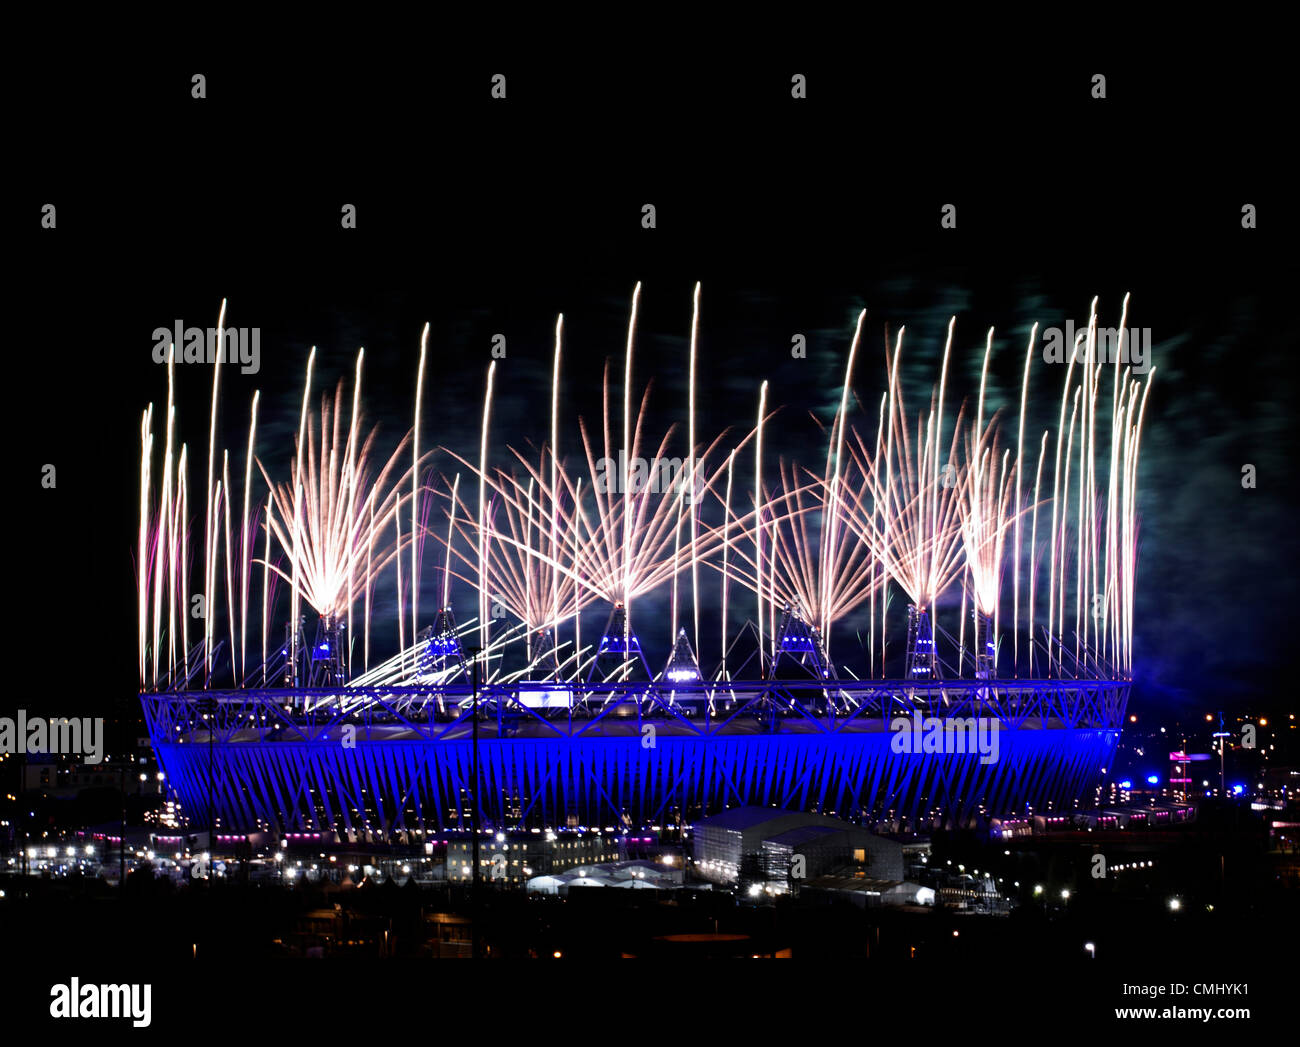 D'artifice aller au-dessus du stade olympique et de l'orbite au cours de la cérémonie de clôture des Jeux Olympiques de 2012 à Londres au parc olympique, Londres, Grande-Bretagne, 12 août 2012. Banque D'Images